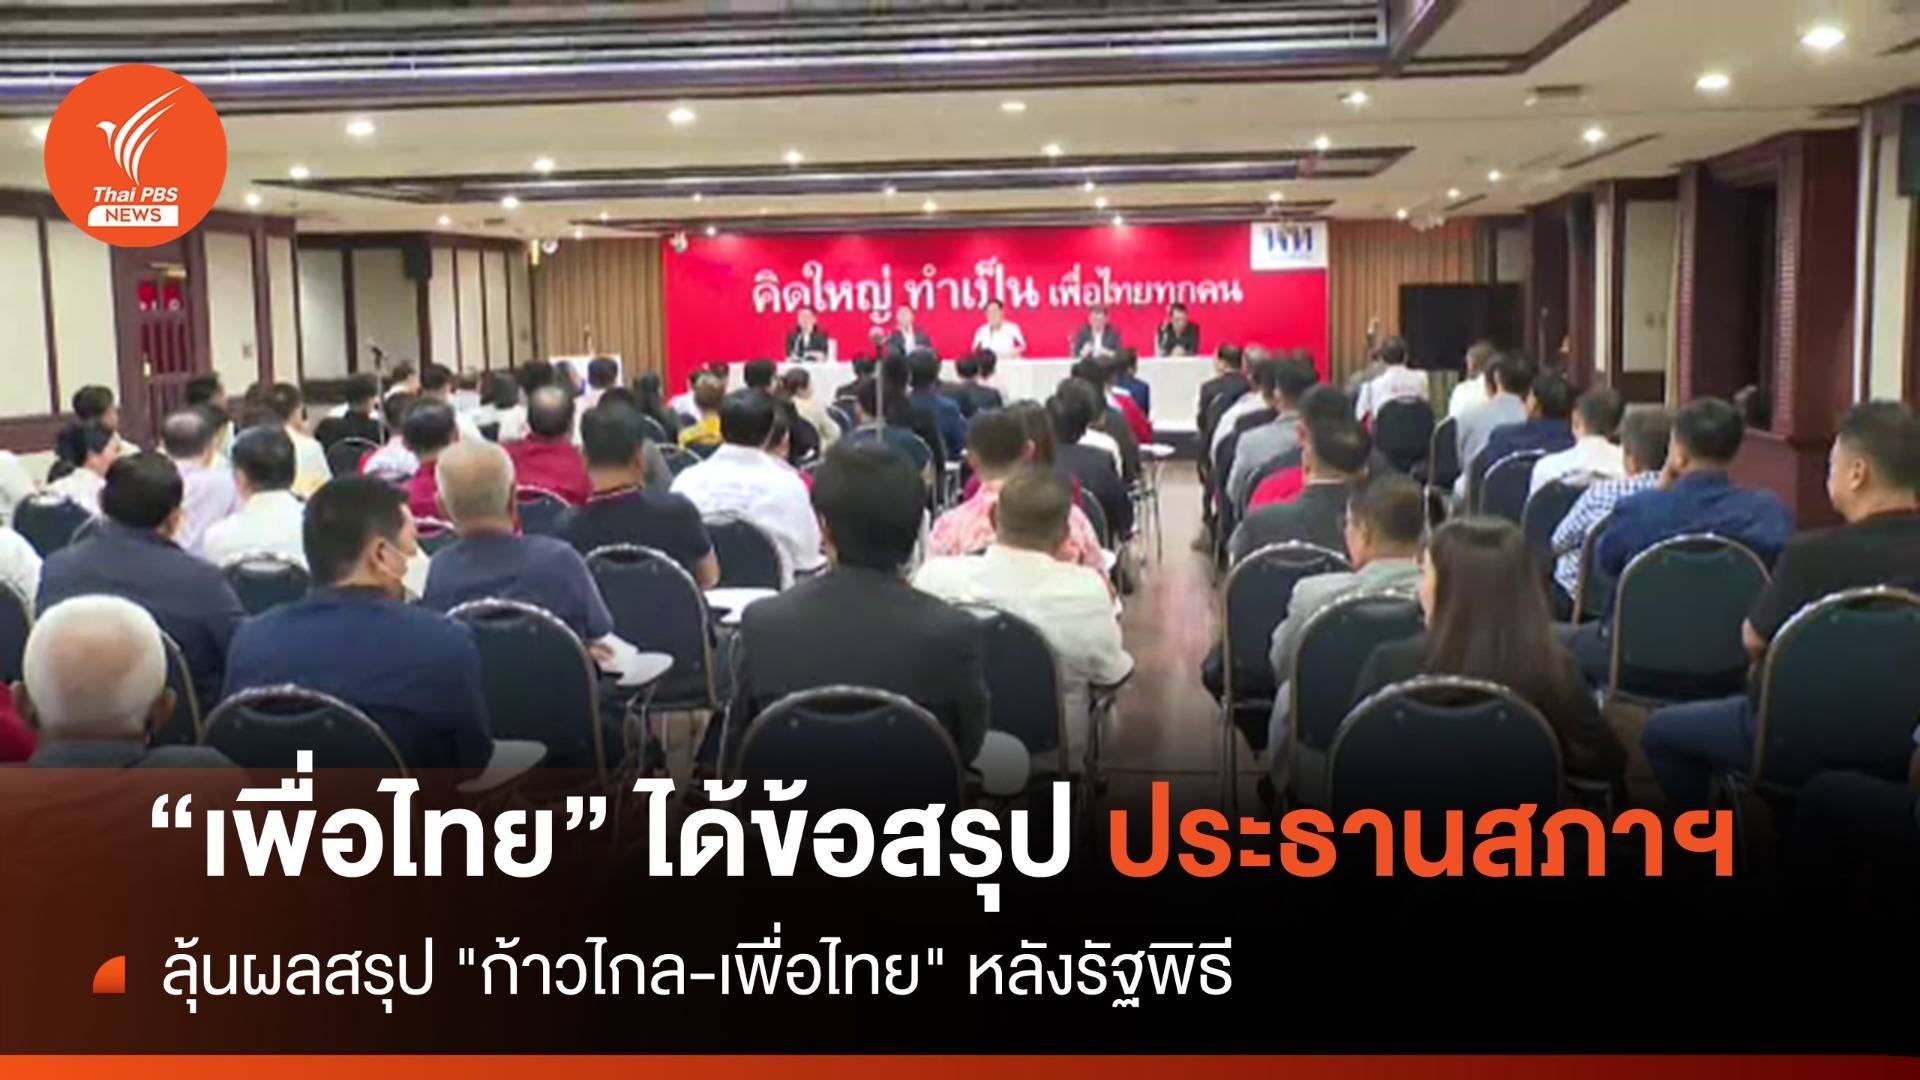 ที่ประชุมพรรคเพื่อไทยได้ข้อสรุป "ปธ.สภาฯ" เชื่อประชาชนไม่ผิดหวัง